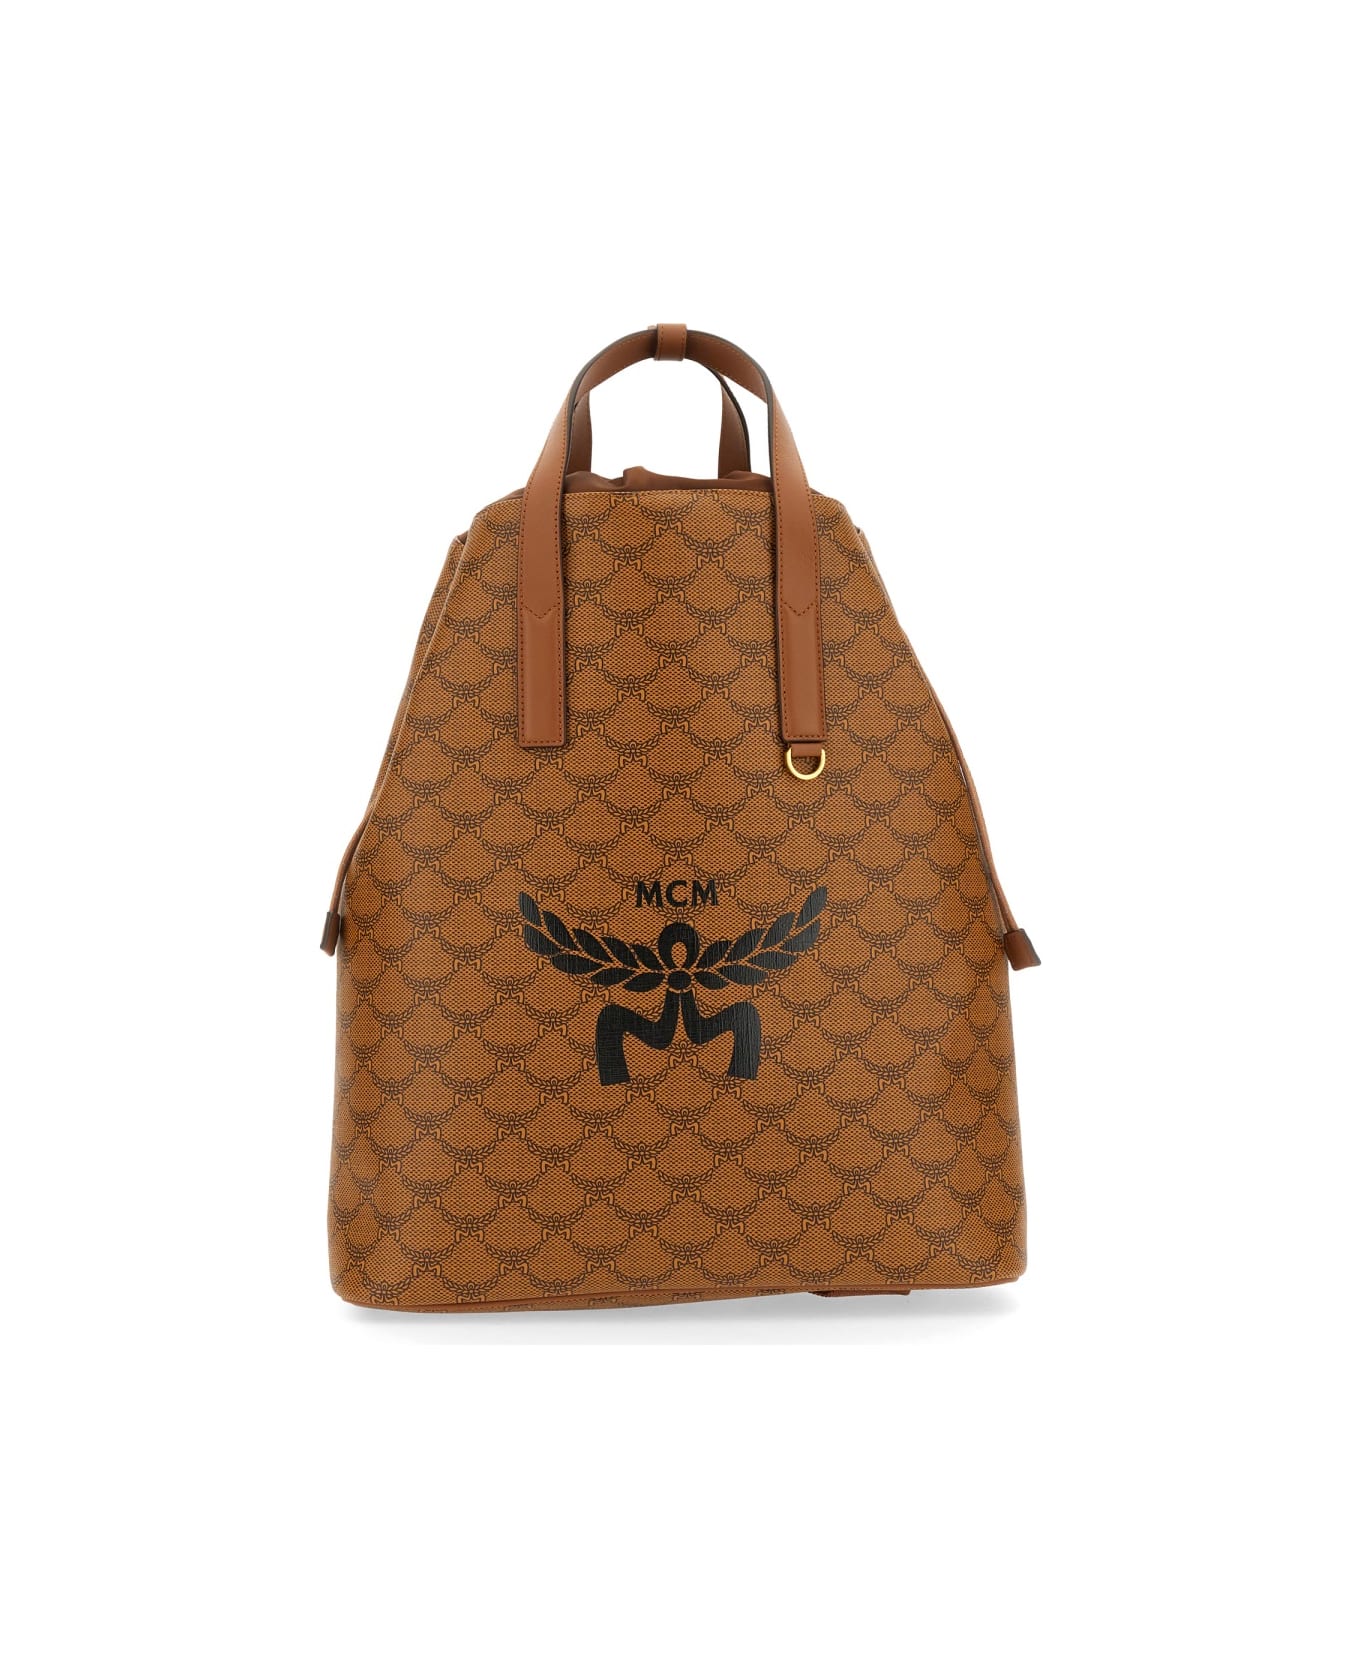 MCM Medium Backpack "lauretos" - BROWN